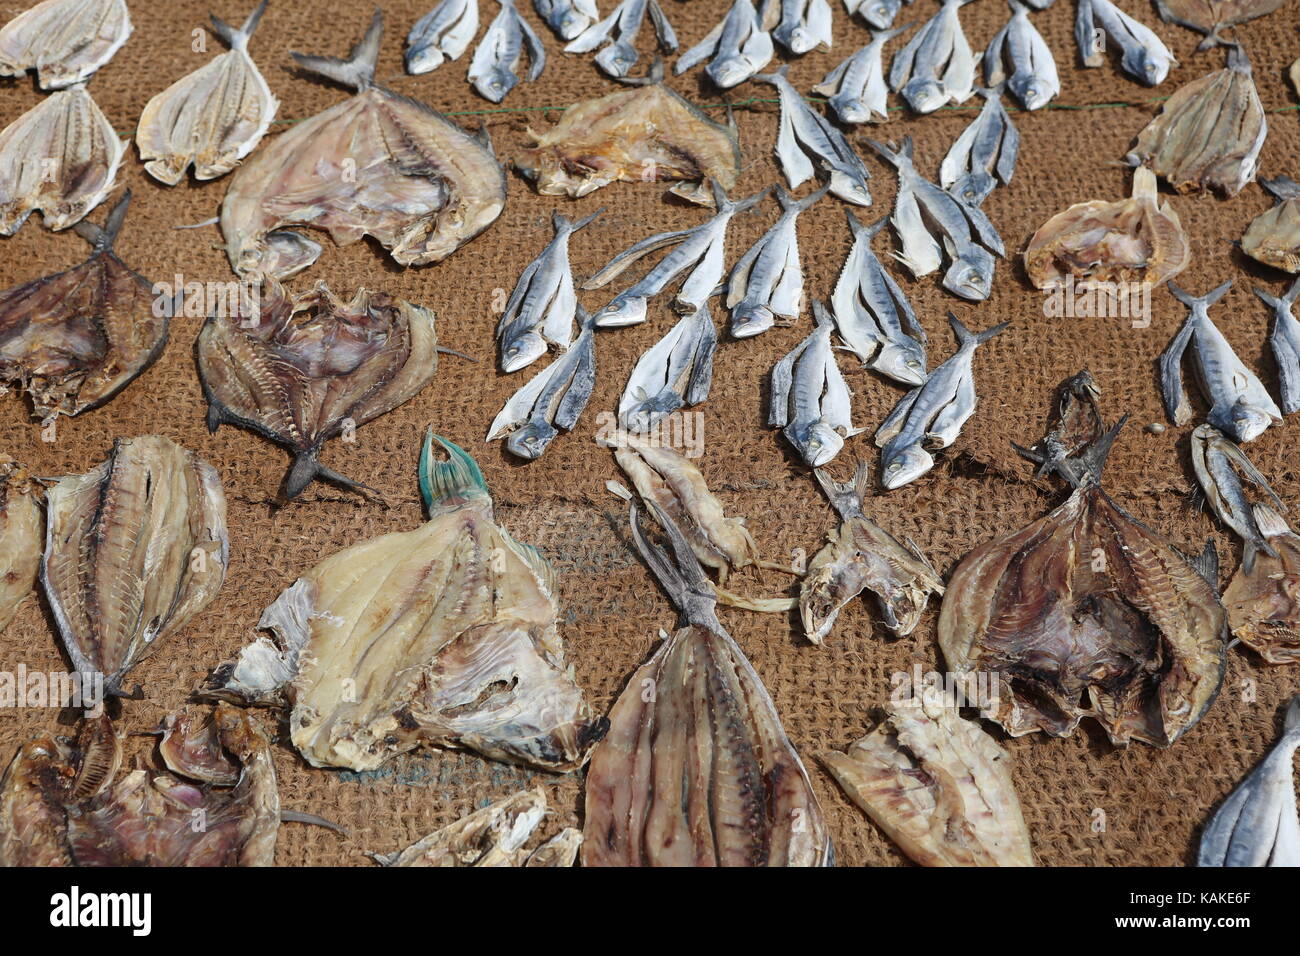 Pesci secchi sul mercato del pesce in Sri Lanka Negombo -- Getrocktneter Fisch auf Fischmarkt in Sri Lanka Negombo Foto Stock